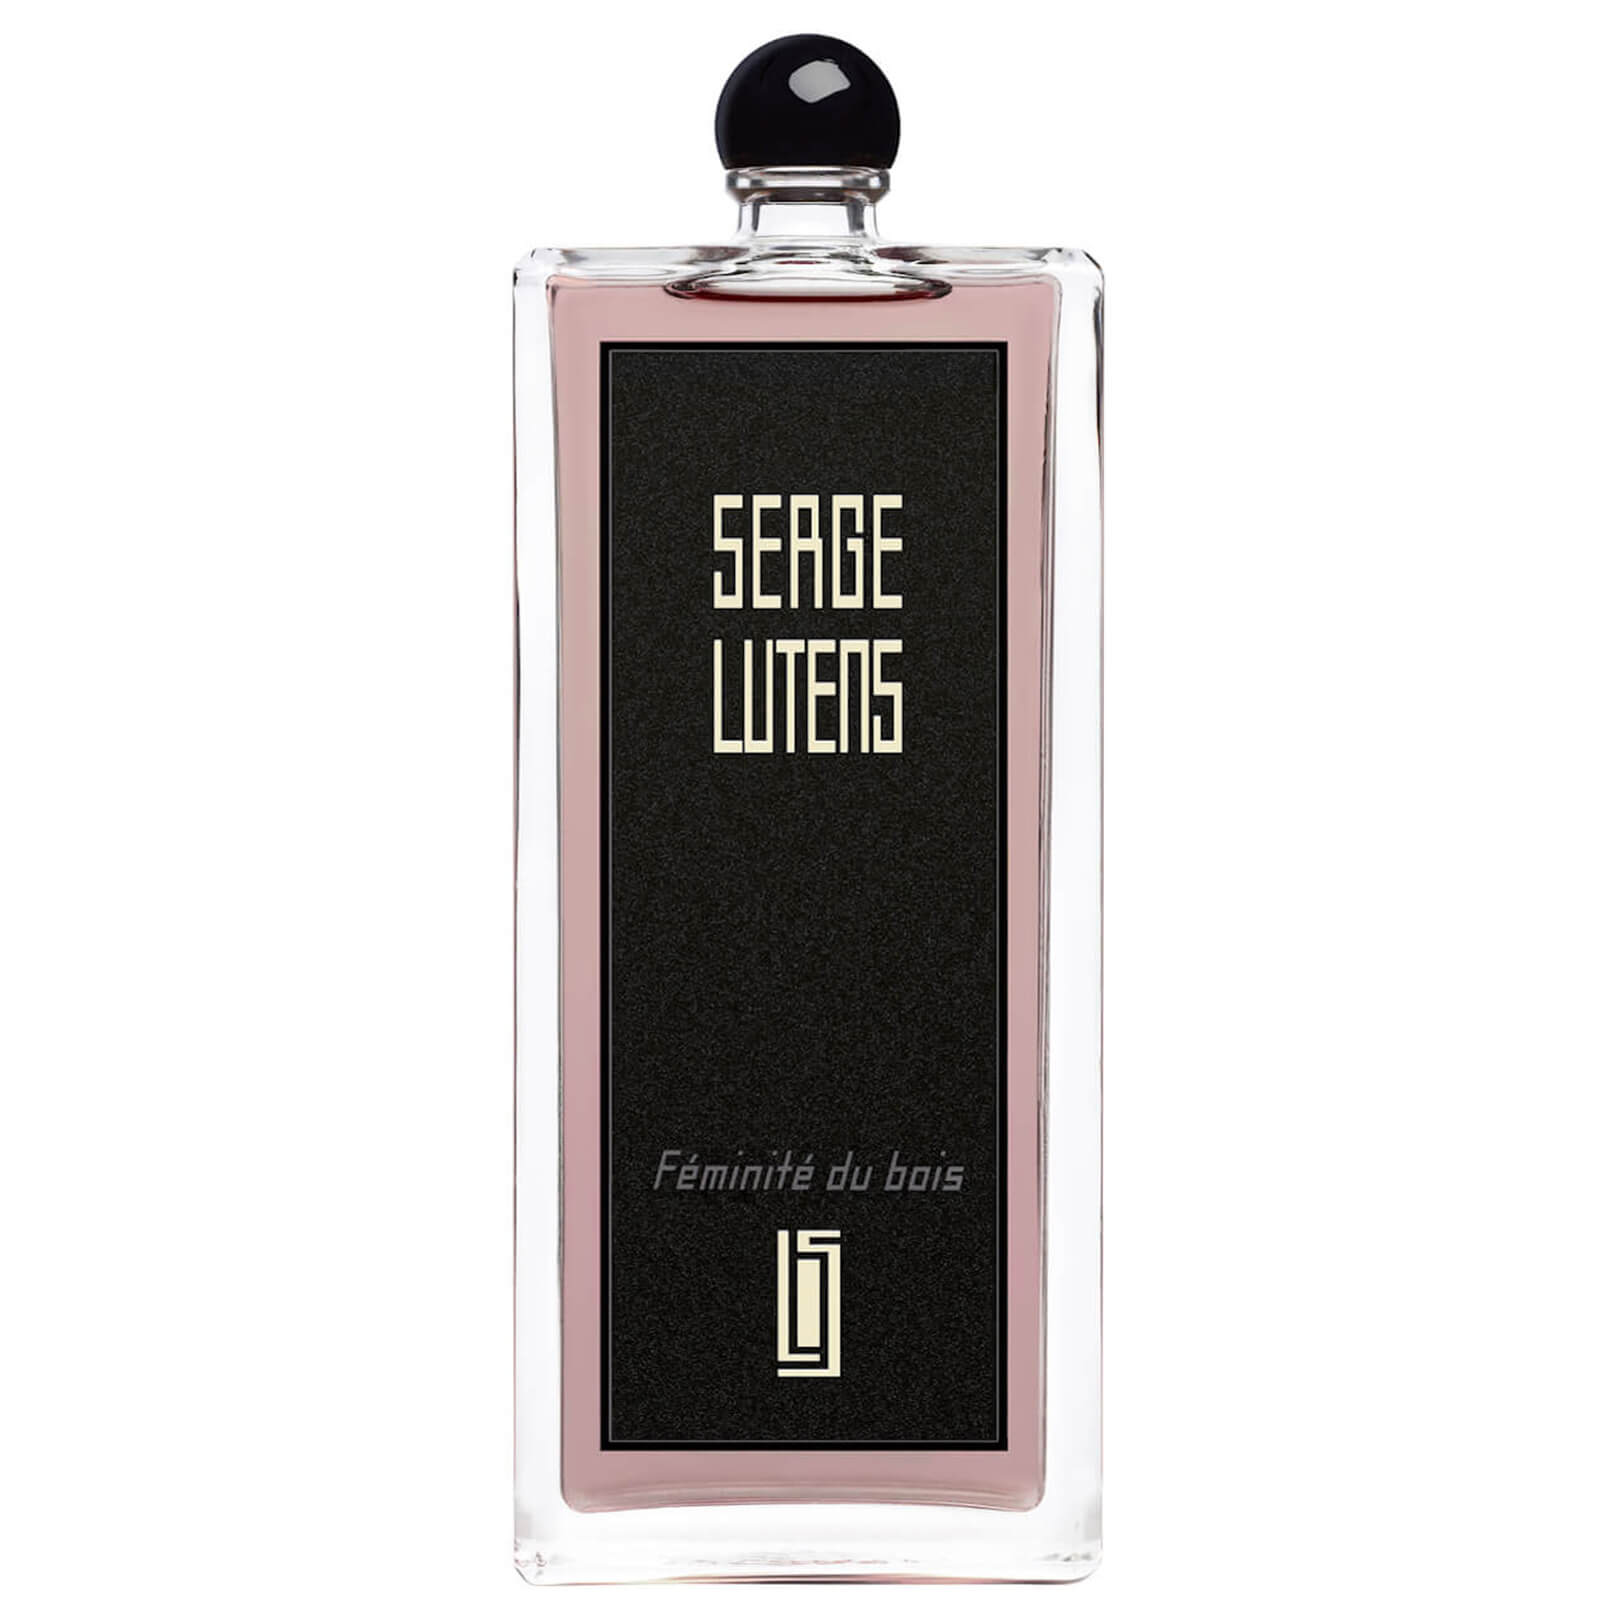 Serge Lutens Feminite du Bois Eau de Parfum - 100ml